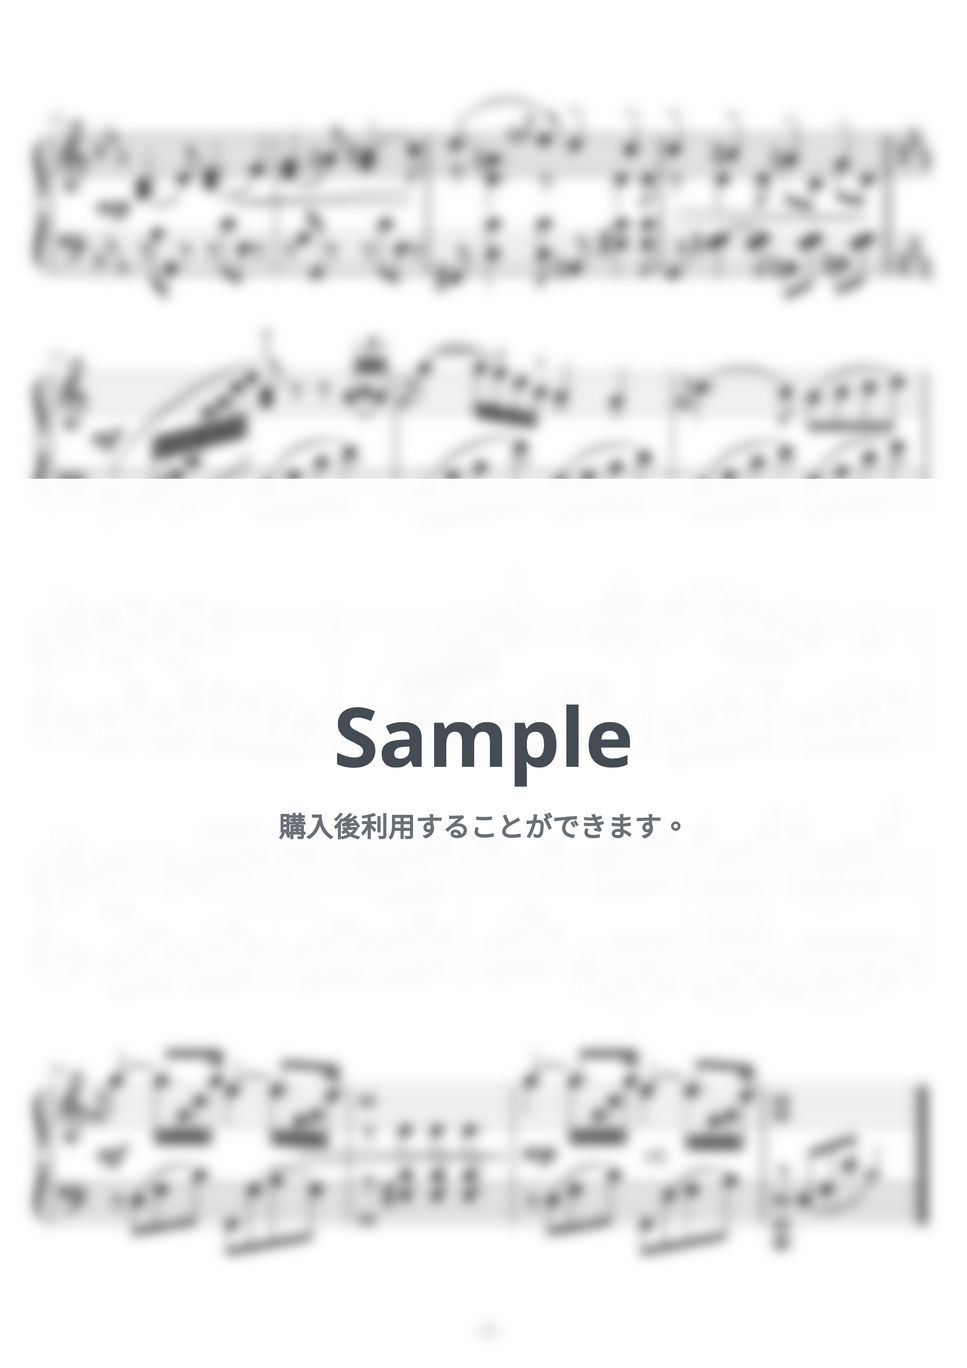 シベリウス - 即興曲（IMPROMPTU）op.99-4（シベリウス作曲）ピティナＣ級課題曲 by ピアノの先生の楽譜集